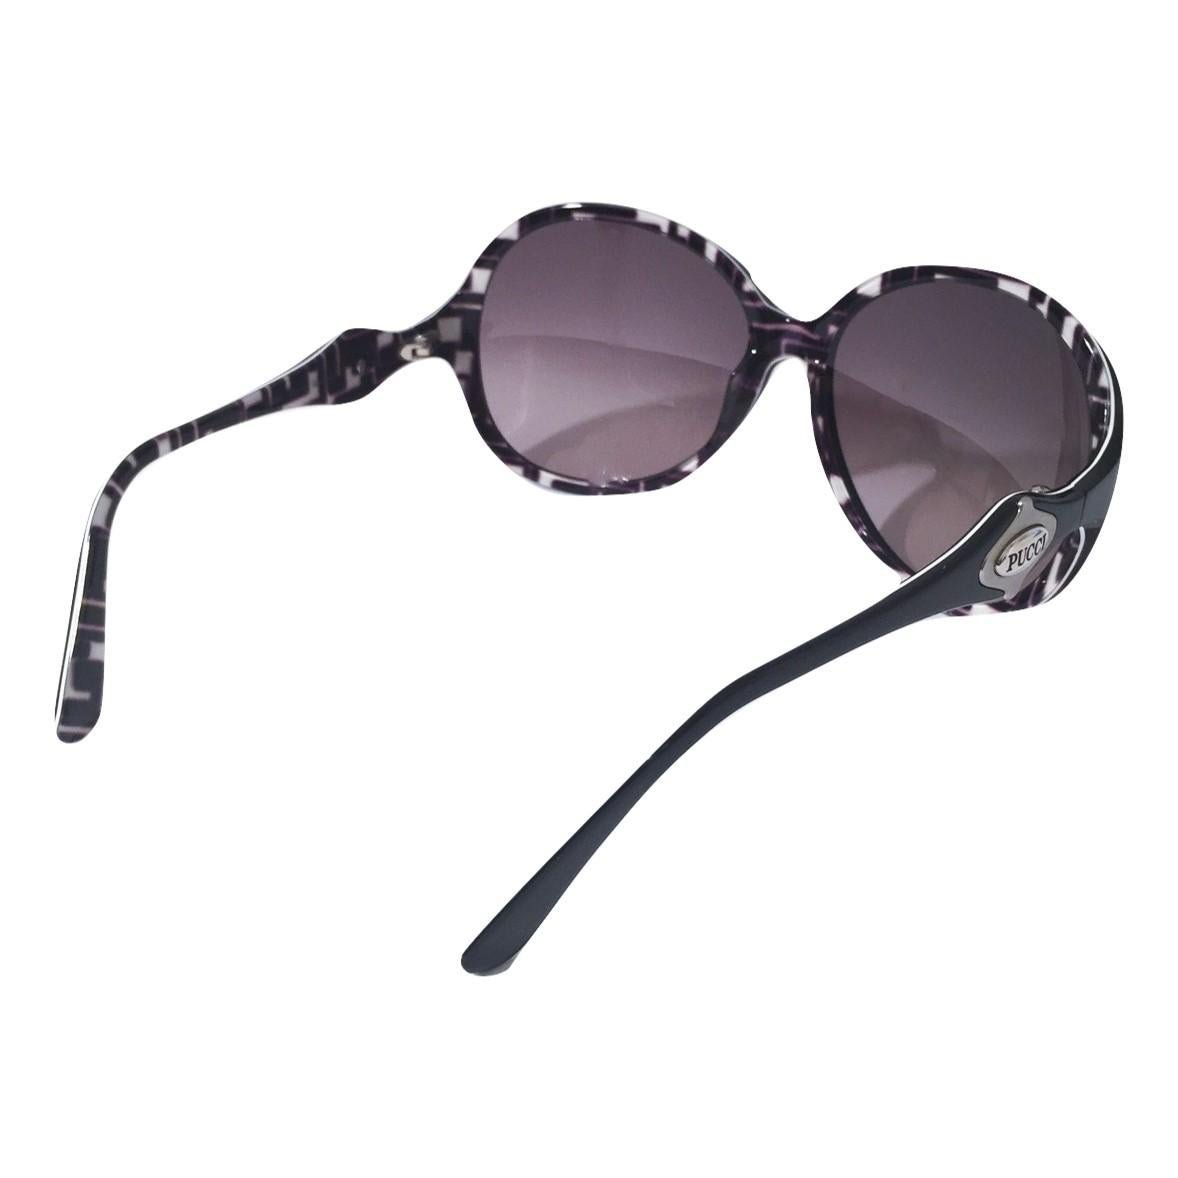 New Emilio Pucci Black Logo Sunglasses With Case & Box 7